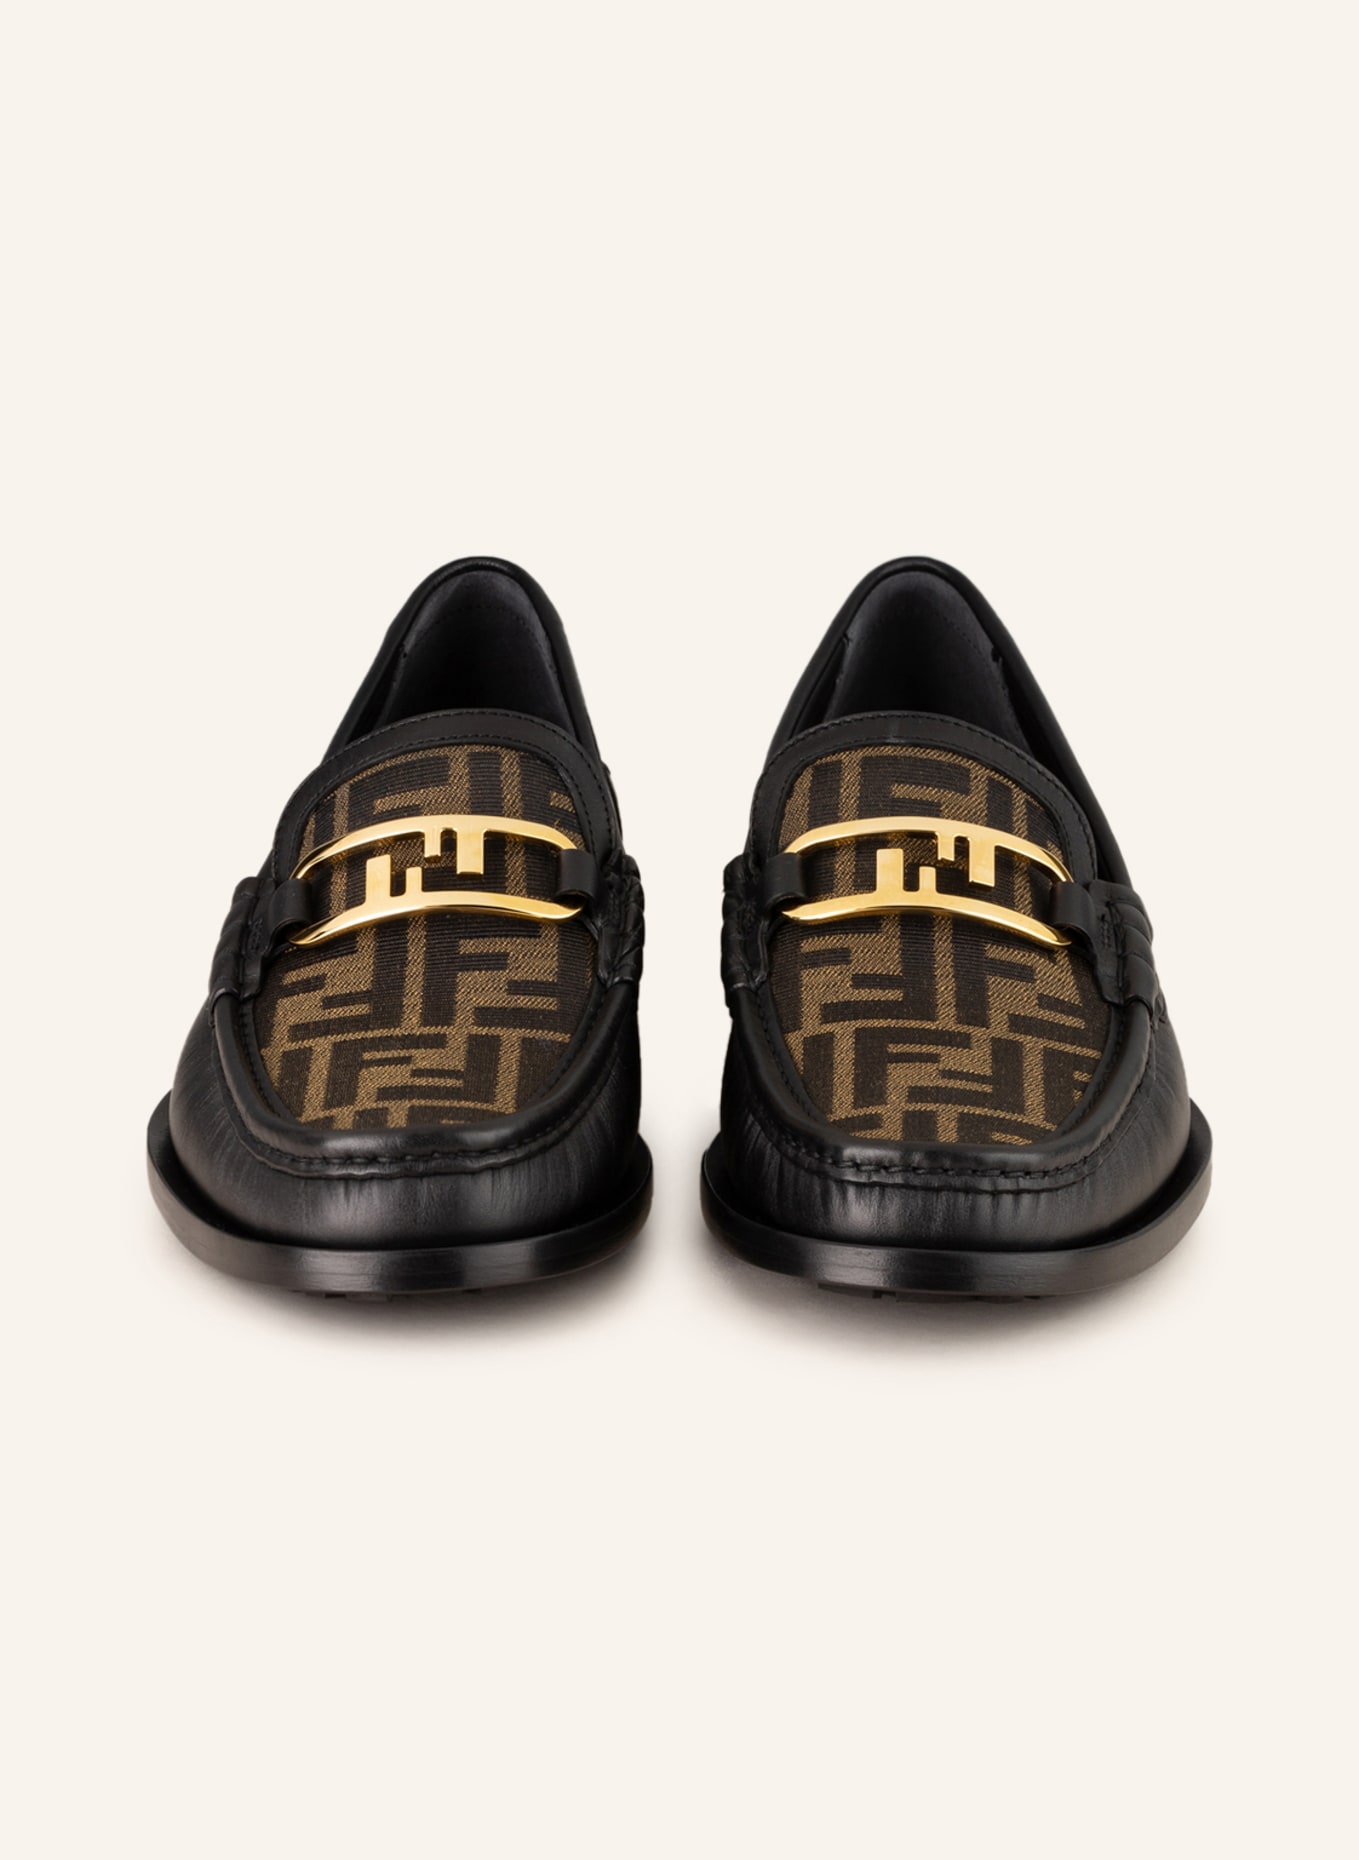 FENDI Loafers, Color: BLACK/ LIGHT BROWN (Image 3)